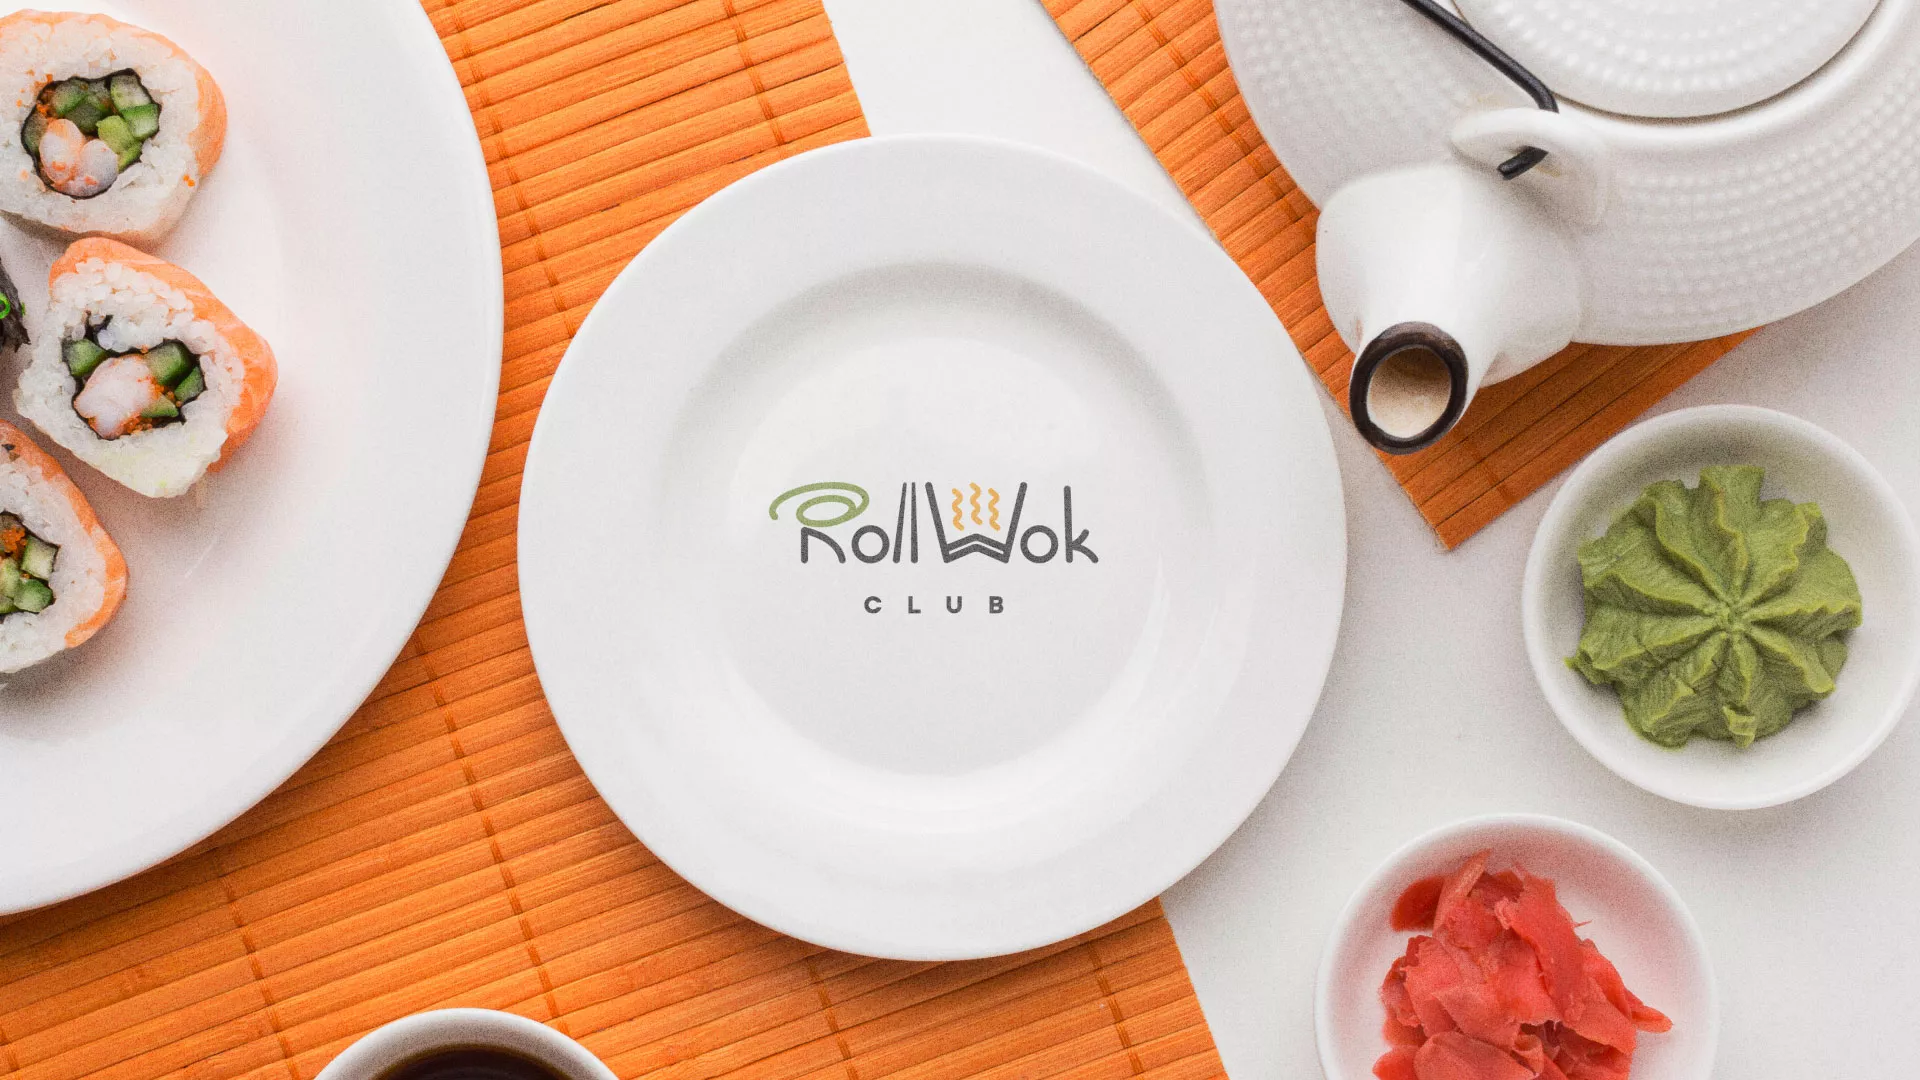 Разработка логотипа и фирменного стиля суши-бара «Roll Wok Club» в Кашине